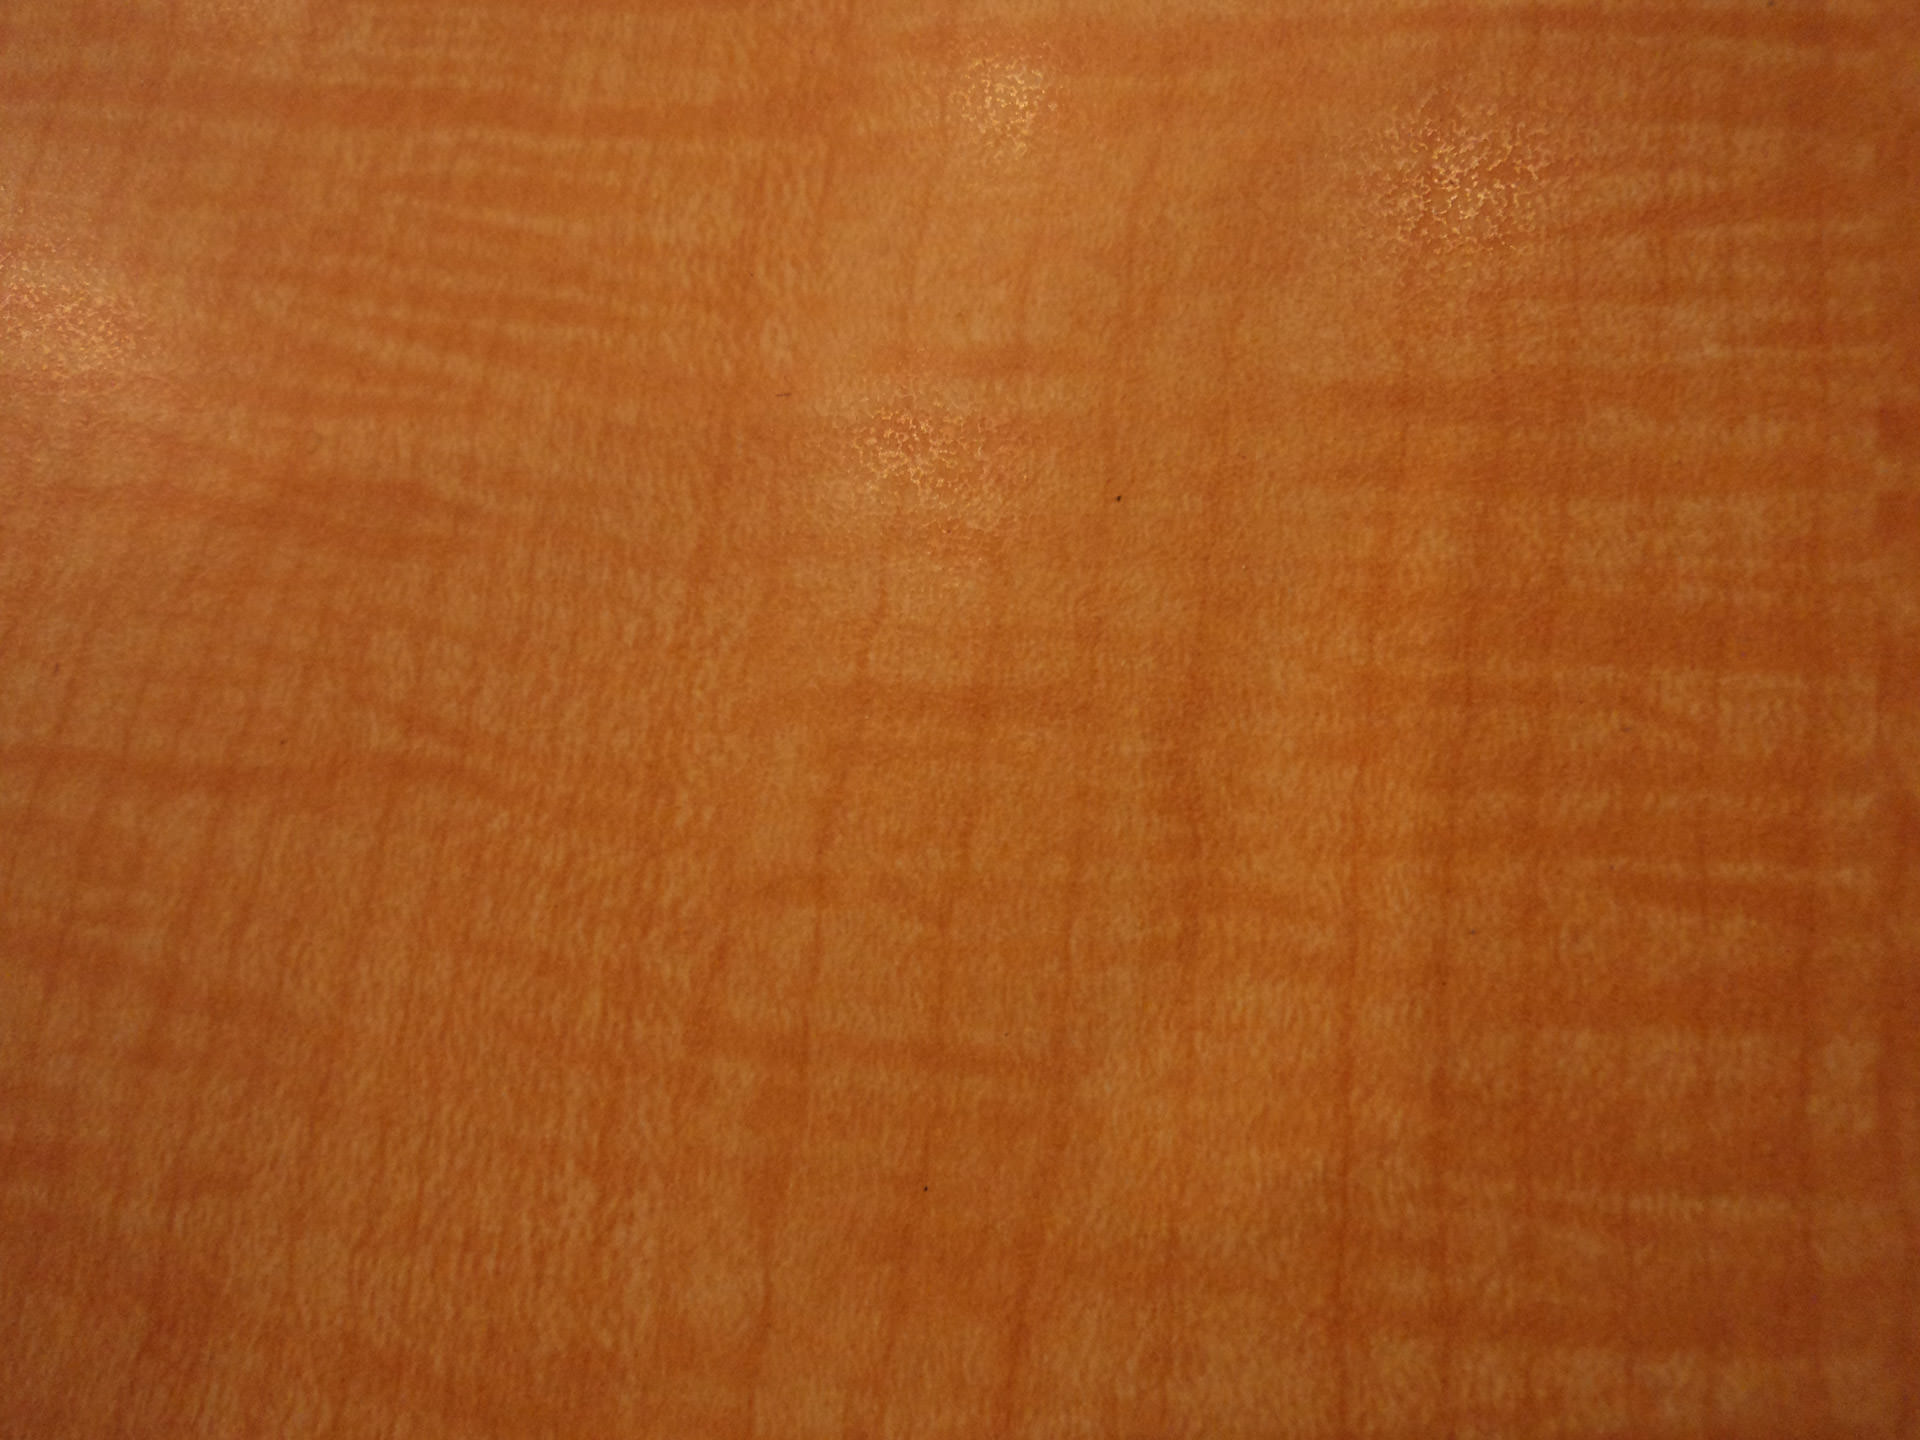 papel pintado marrón claro,naranja,marrón,madera,bronceado,color caramelo